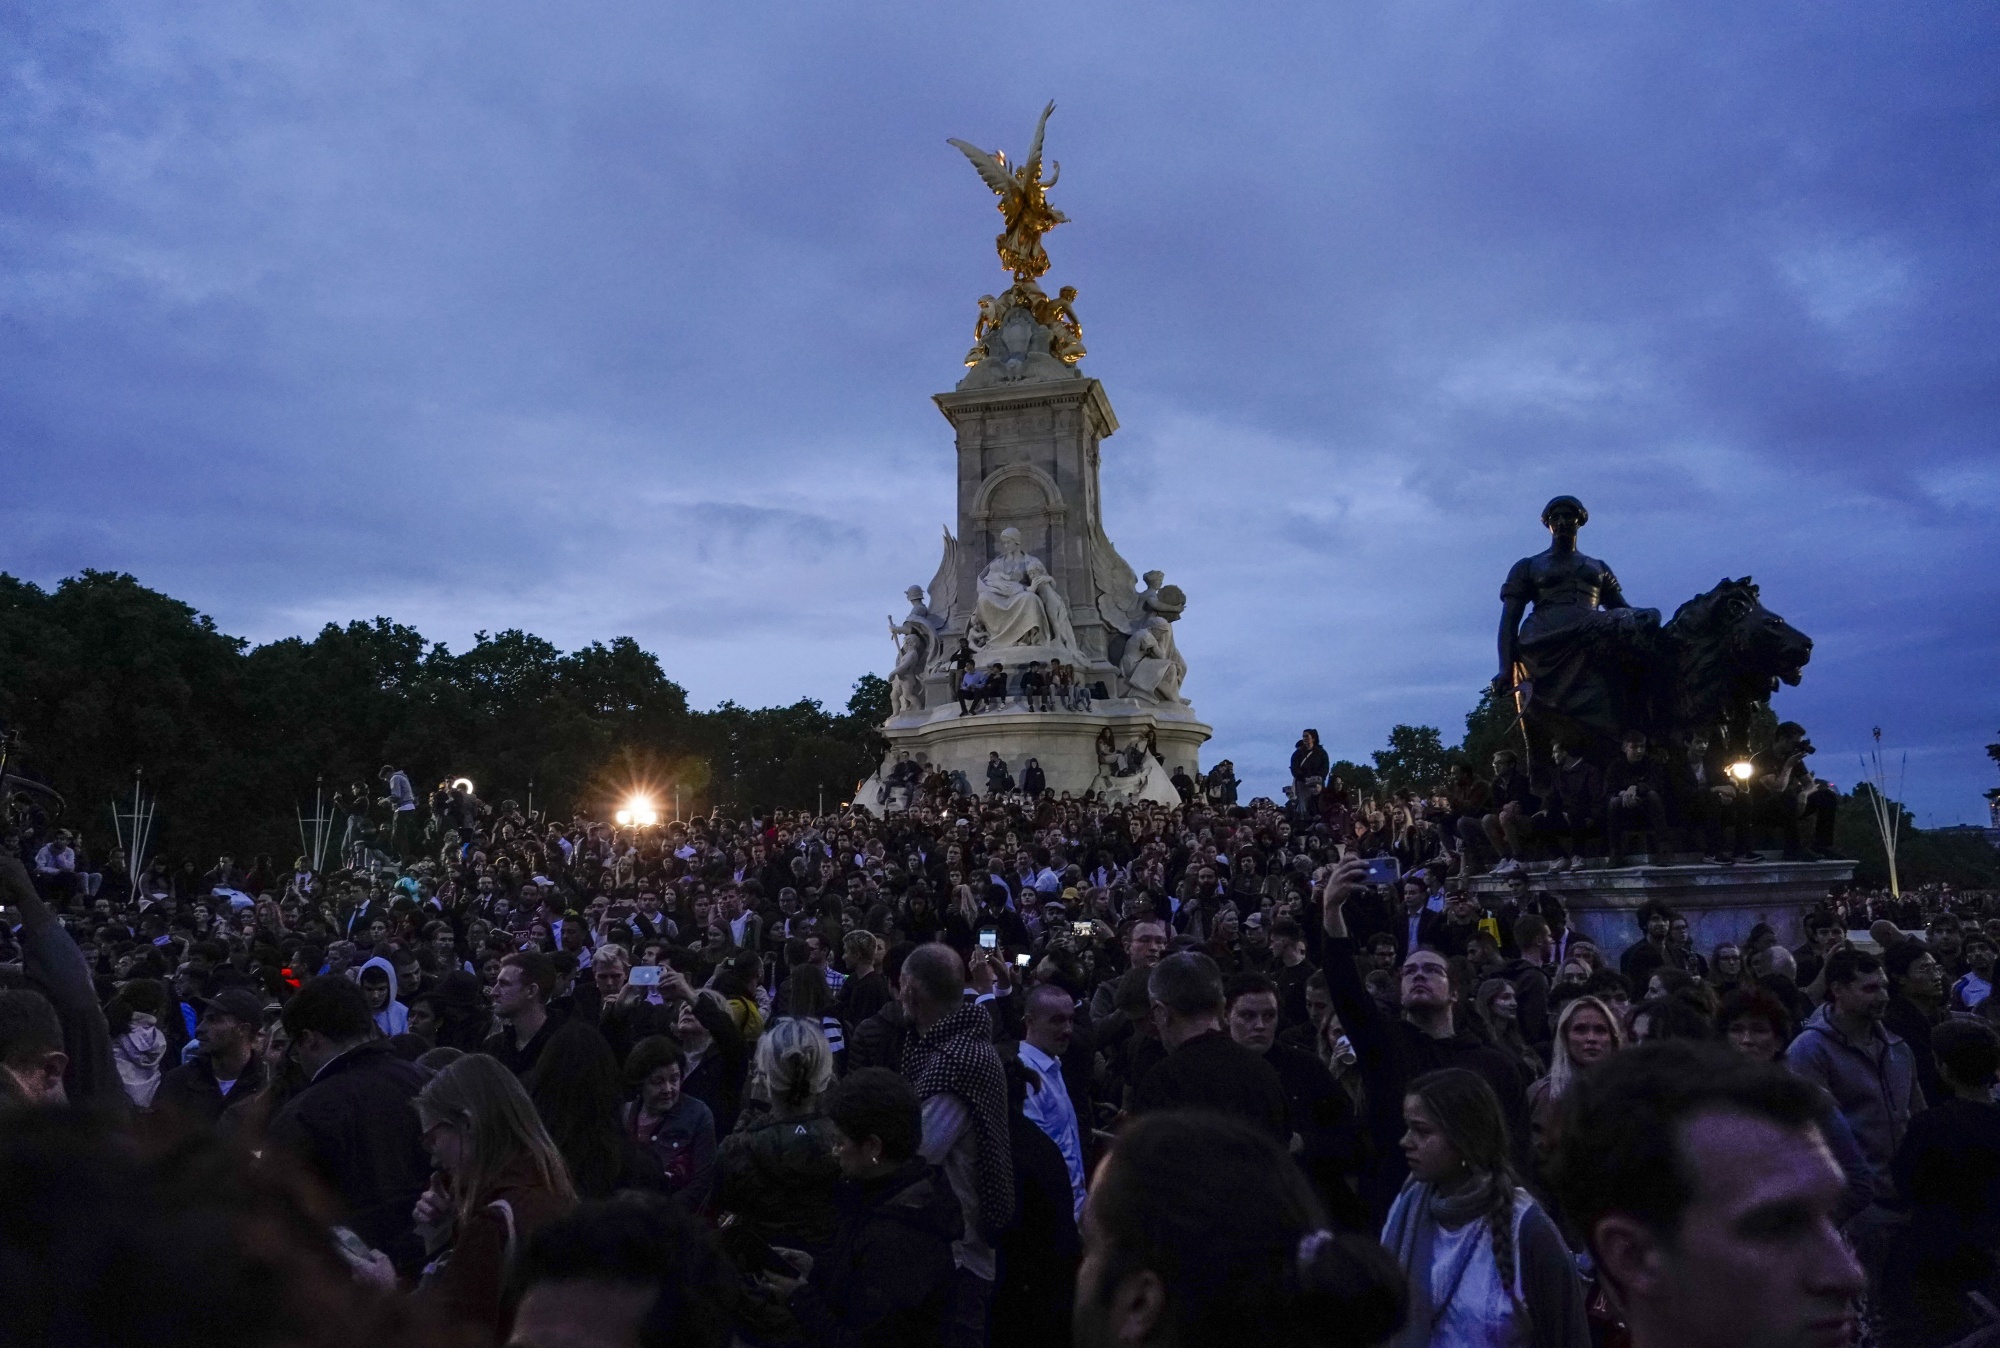 Прощание с миром. Тысячи людей возле дворца королевы Елизаветы. Сентябрь во Франции. Британия 8 сентября.